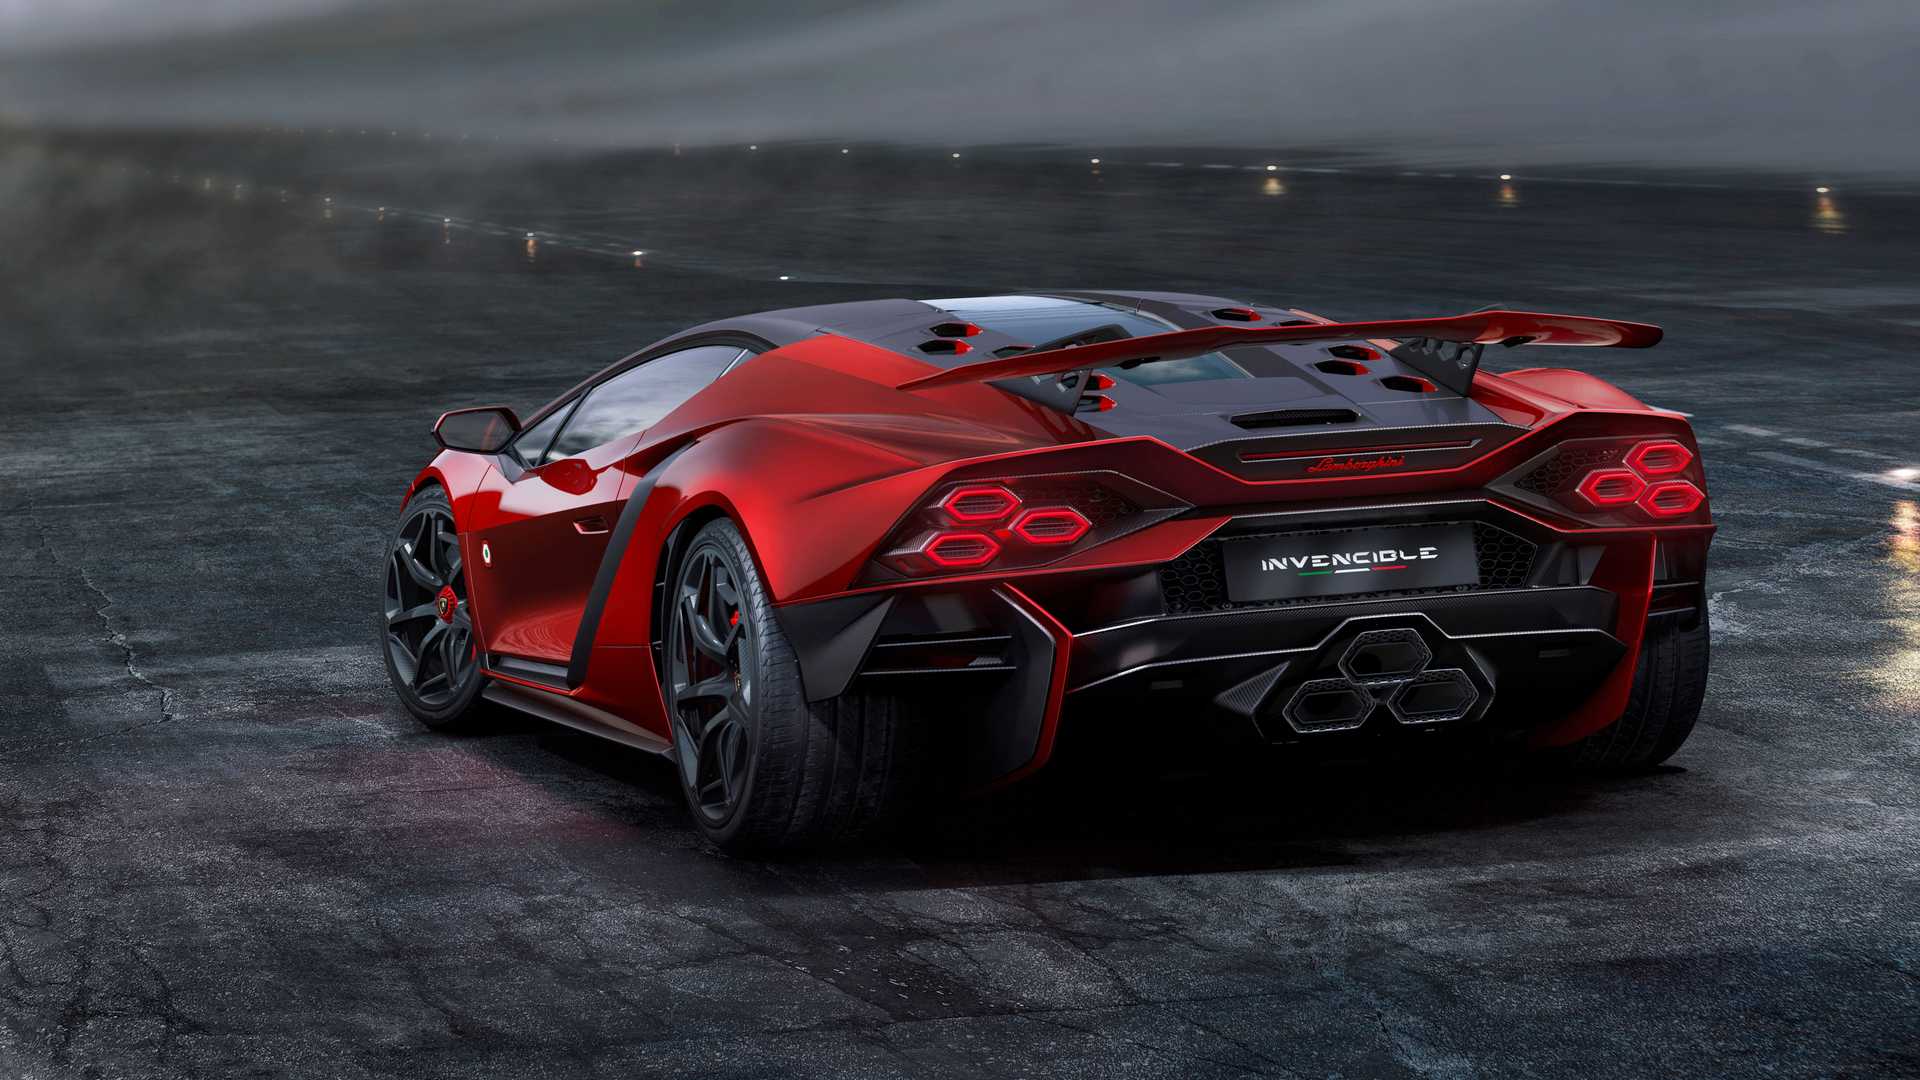 Lamborghini ra mắt bộ đôi siêu xe V12 chạy xăng cuối cùng, sau đây sẽ toàn siêu xe điện êm ru chưa biết nẹt pô kiểu gì - ảnh 7